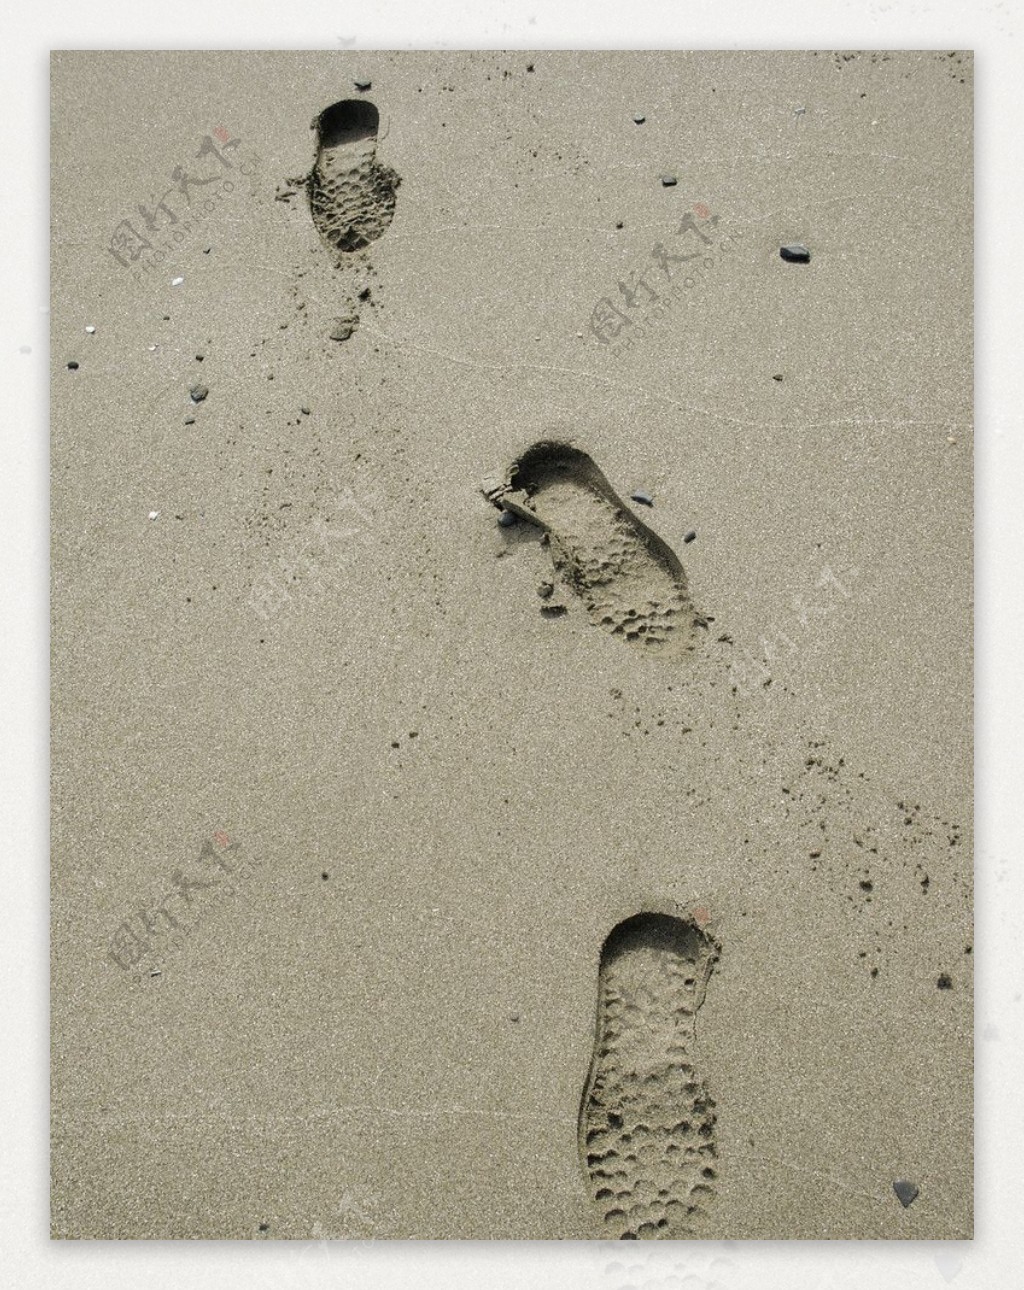 图片素材 : 海滩, 砂, 岩, 叶, 脚印, 脚步, 阴影, 泥, 蓝色, 海龟, 材料 2177x3264 - - 109 - 素材中国 ...